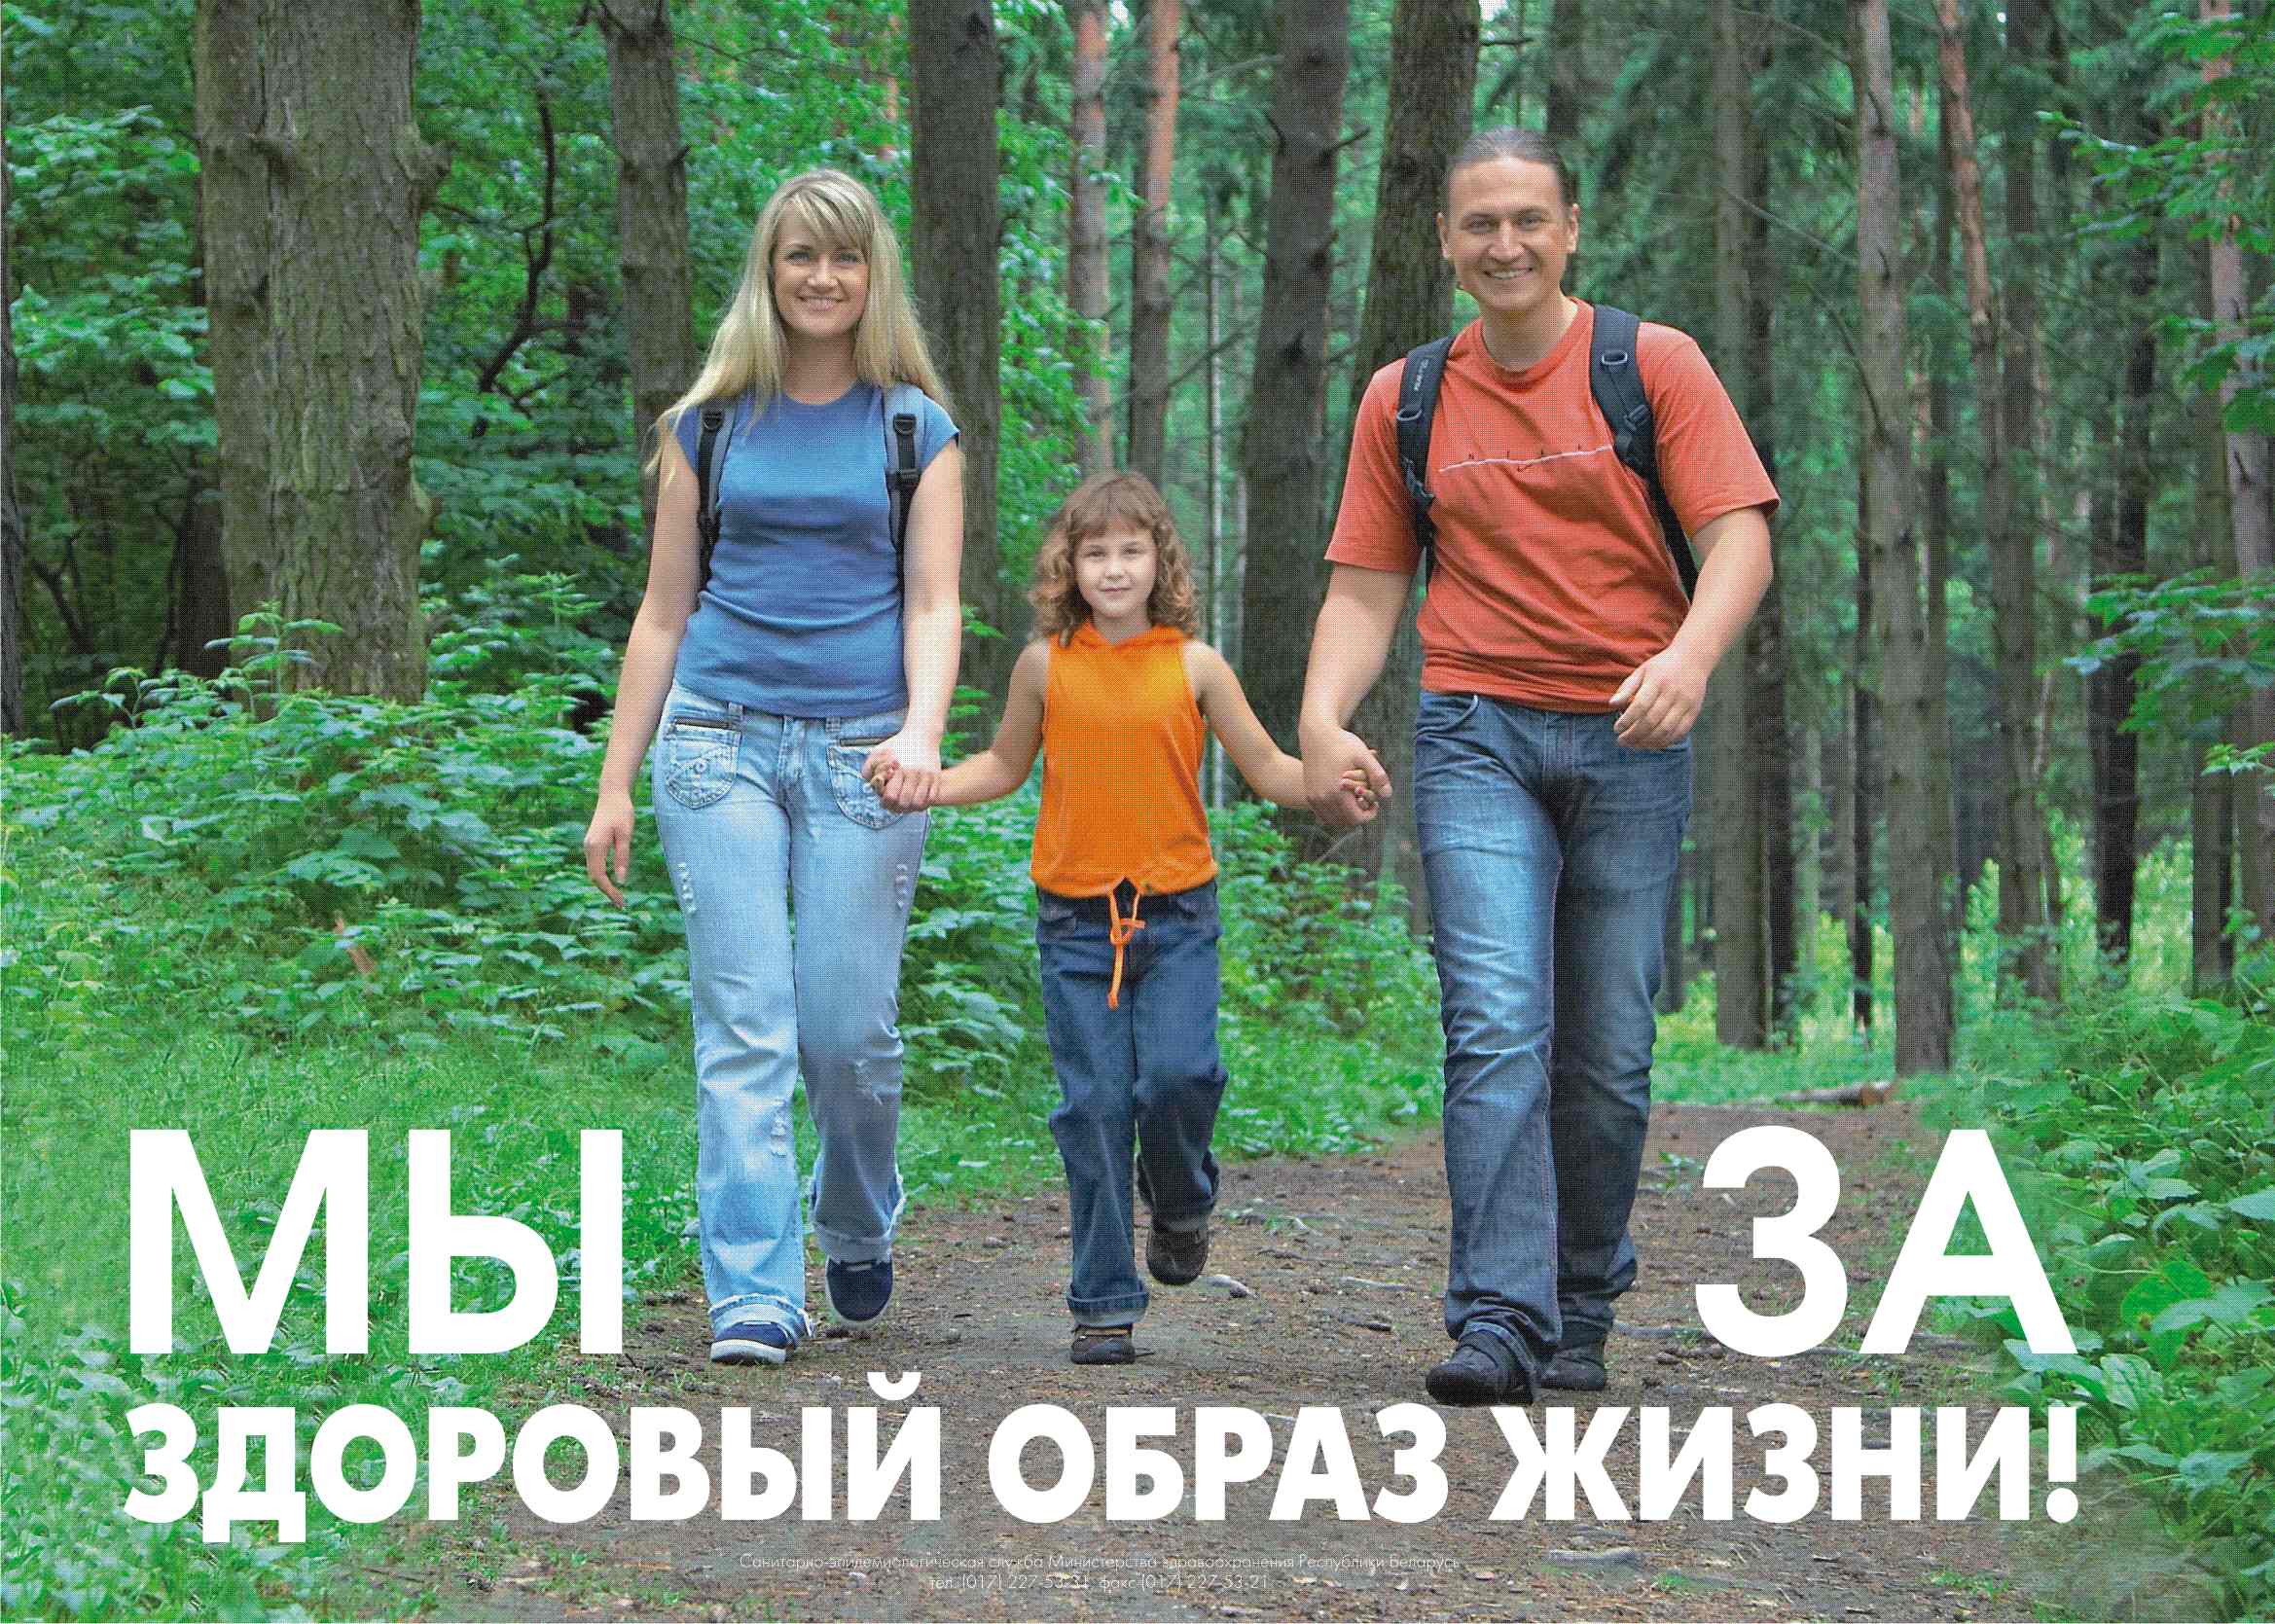 Молодежь Калининского района Чебоксар выбирает здоровый образ жизни